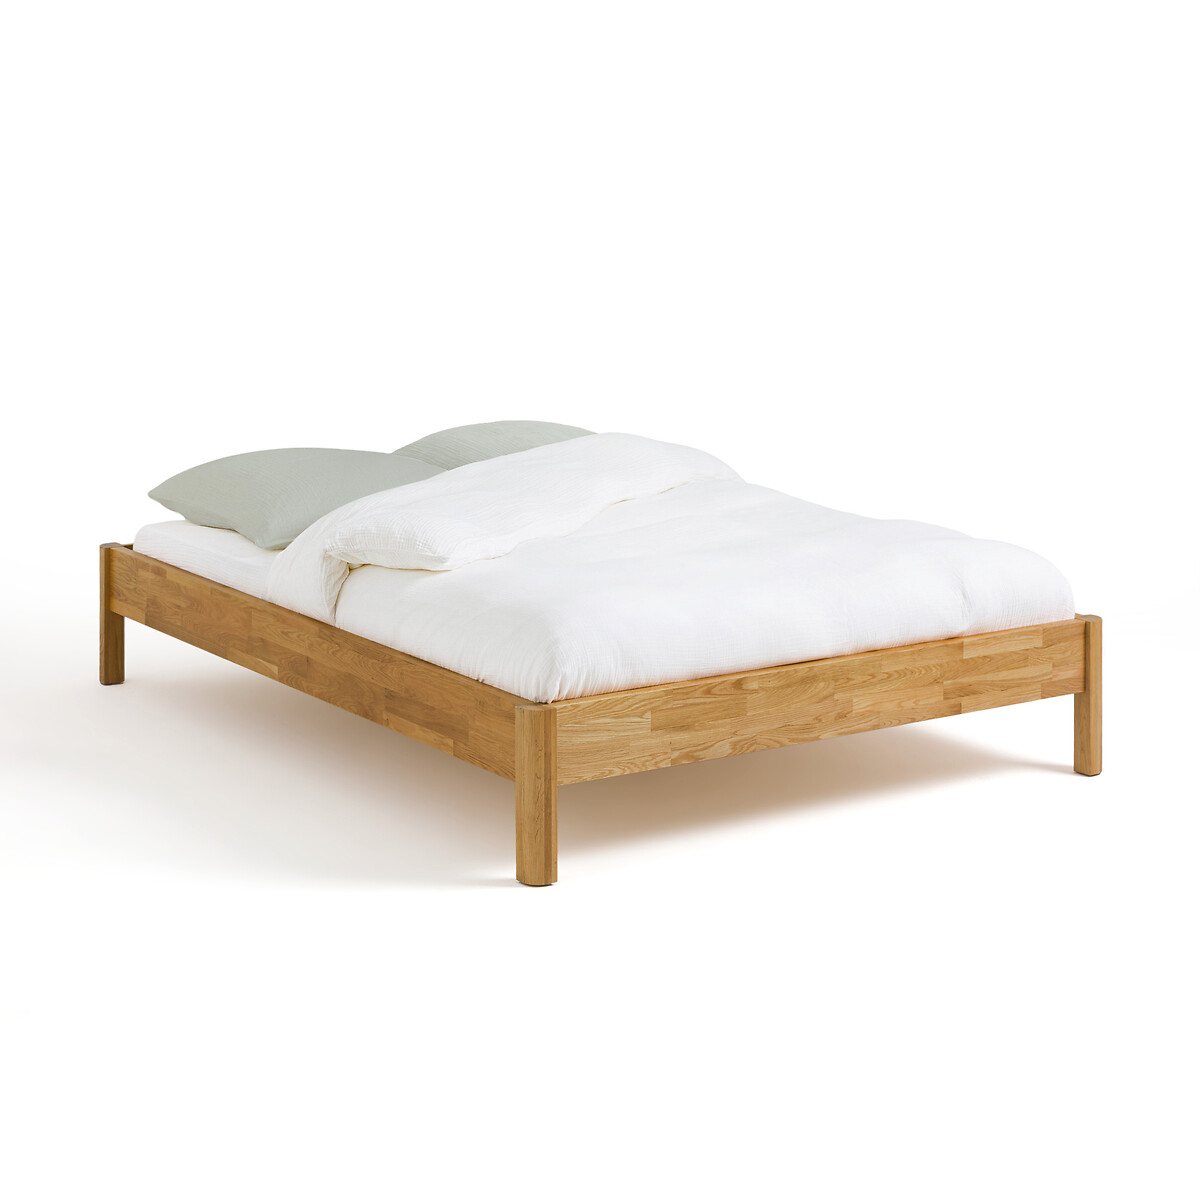 Кровать LaRedoute Кровать Из массива дуба с сеткой Zulda 160 x 200 см каштановый